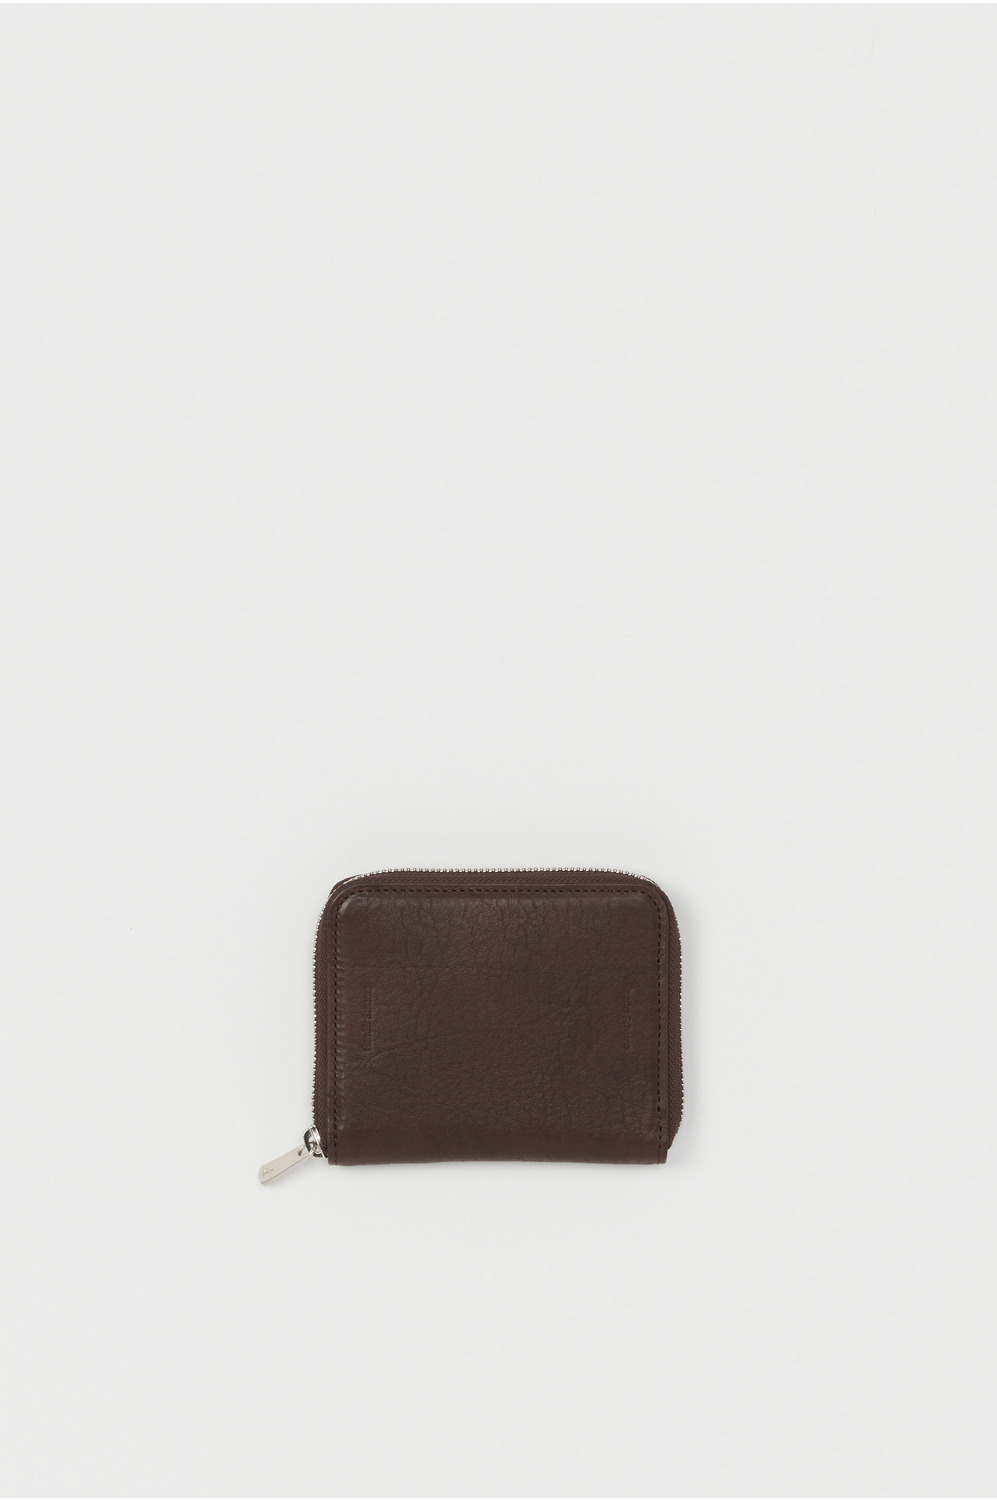 square zip purse 詳細画像 choco 1